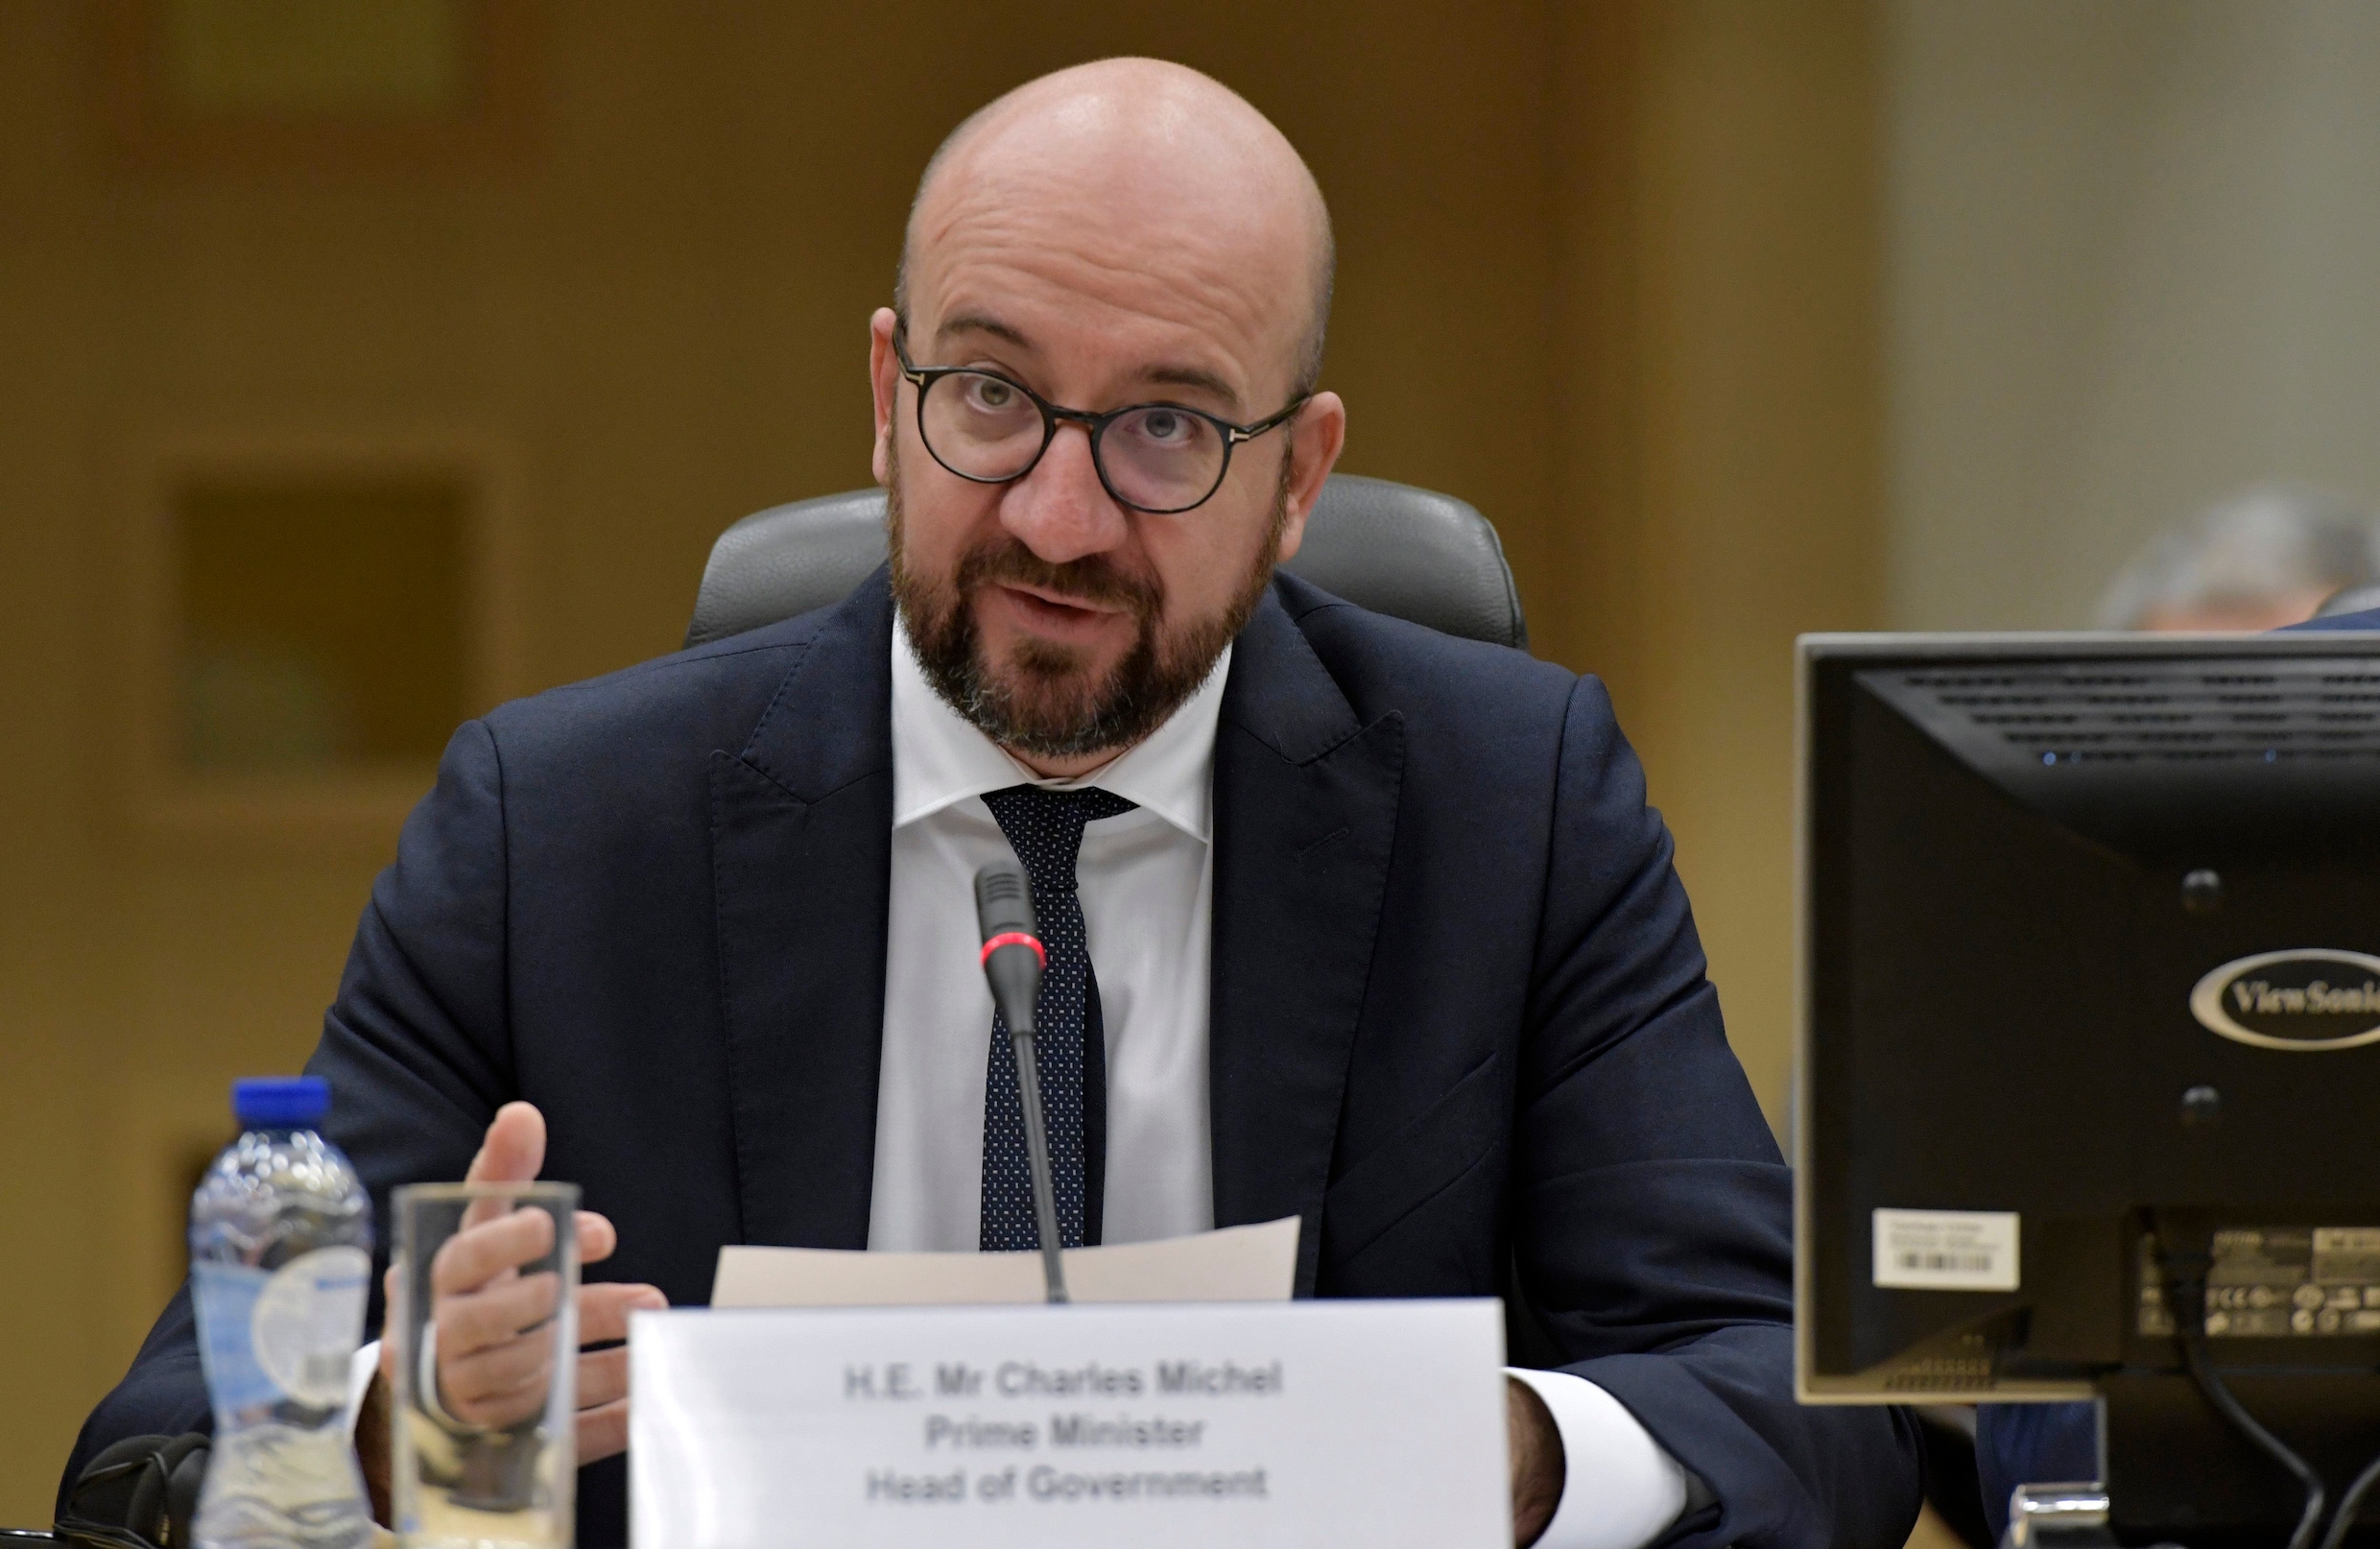 Premier Michel vraagt parlement zich uit te spreken over pact, Groen en sp.a steunen premier